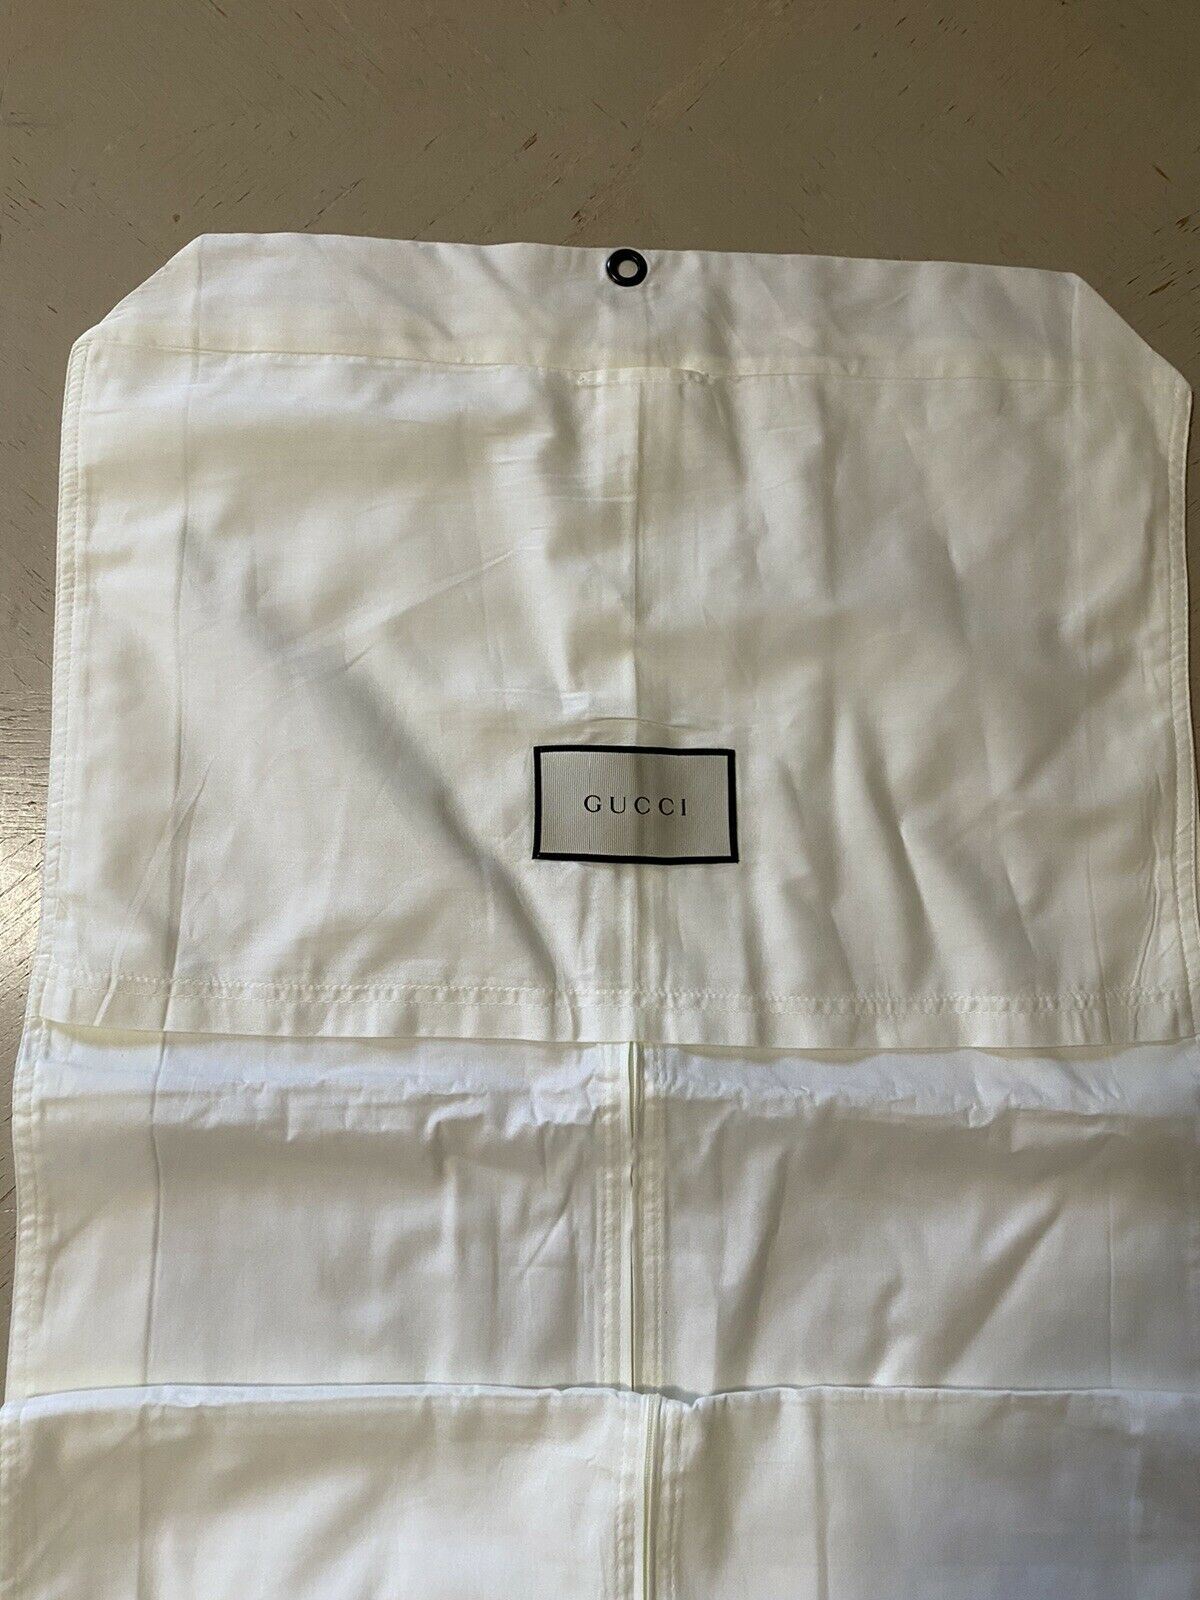 Brandneuer Gucci-Anzug, jede Kleidung, weiße Unisex-Tasche